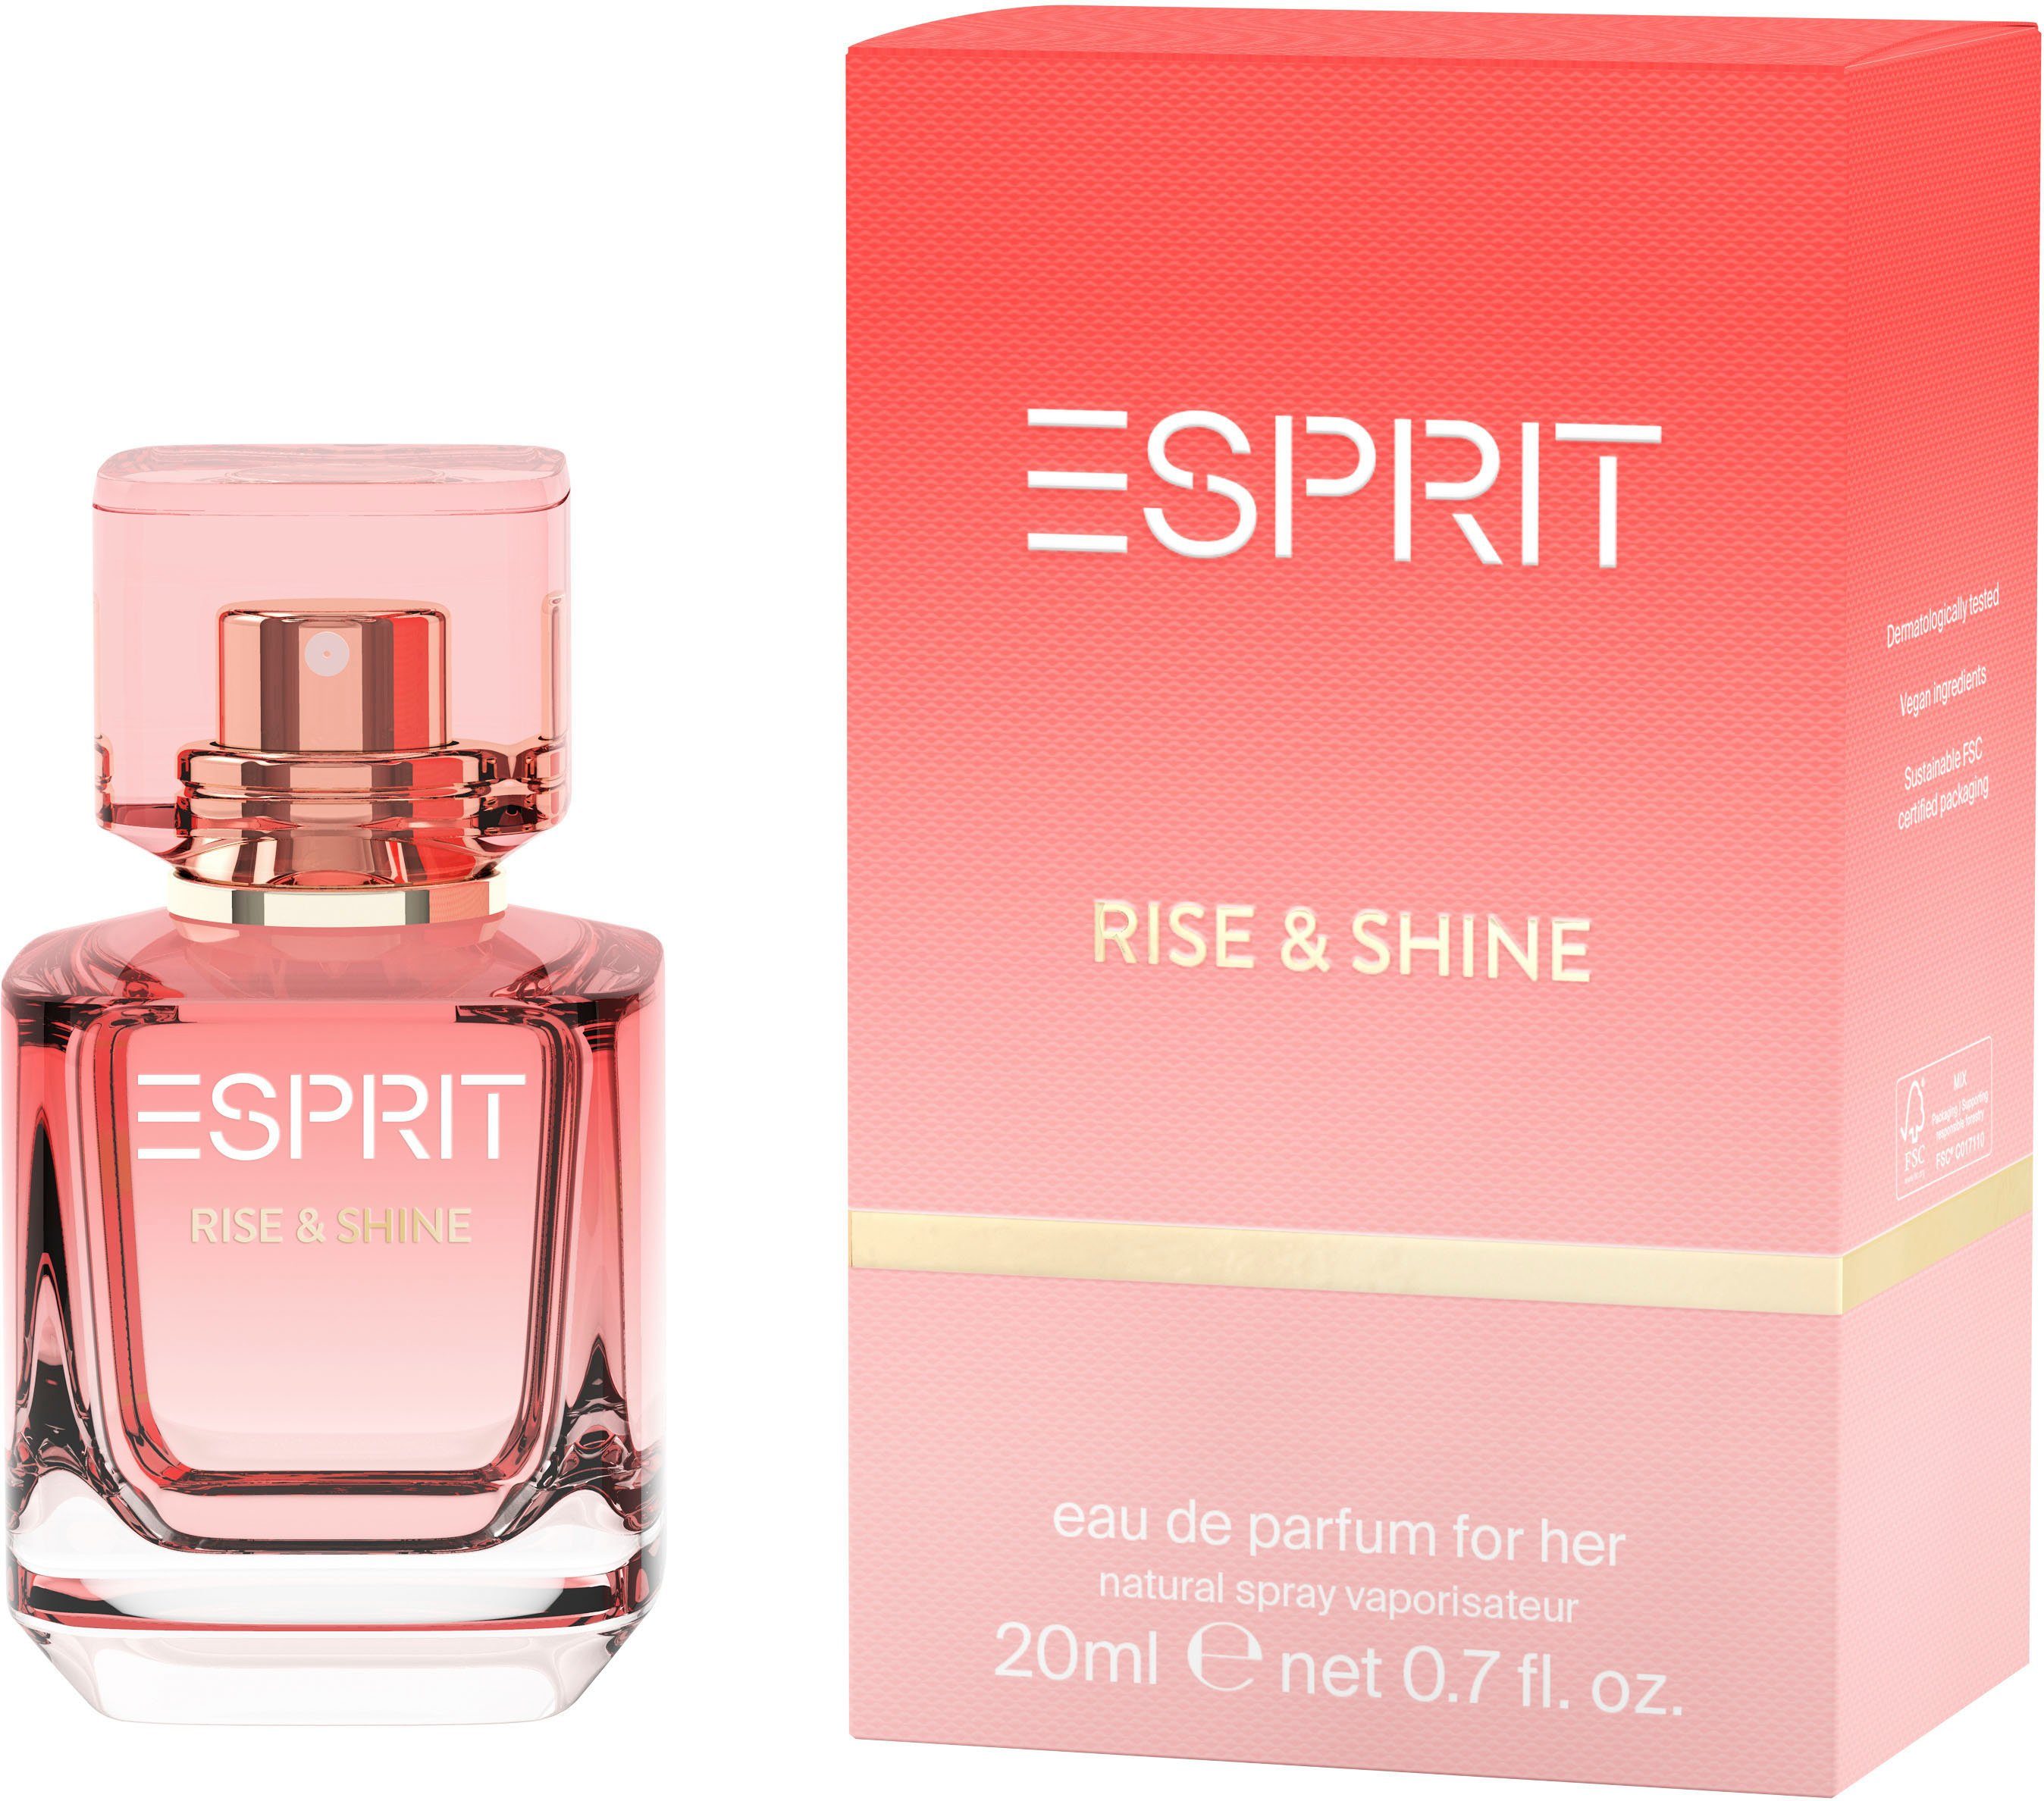 Esprit Eau de Parfum for her EdP 20ml